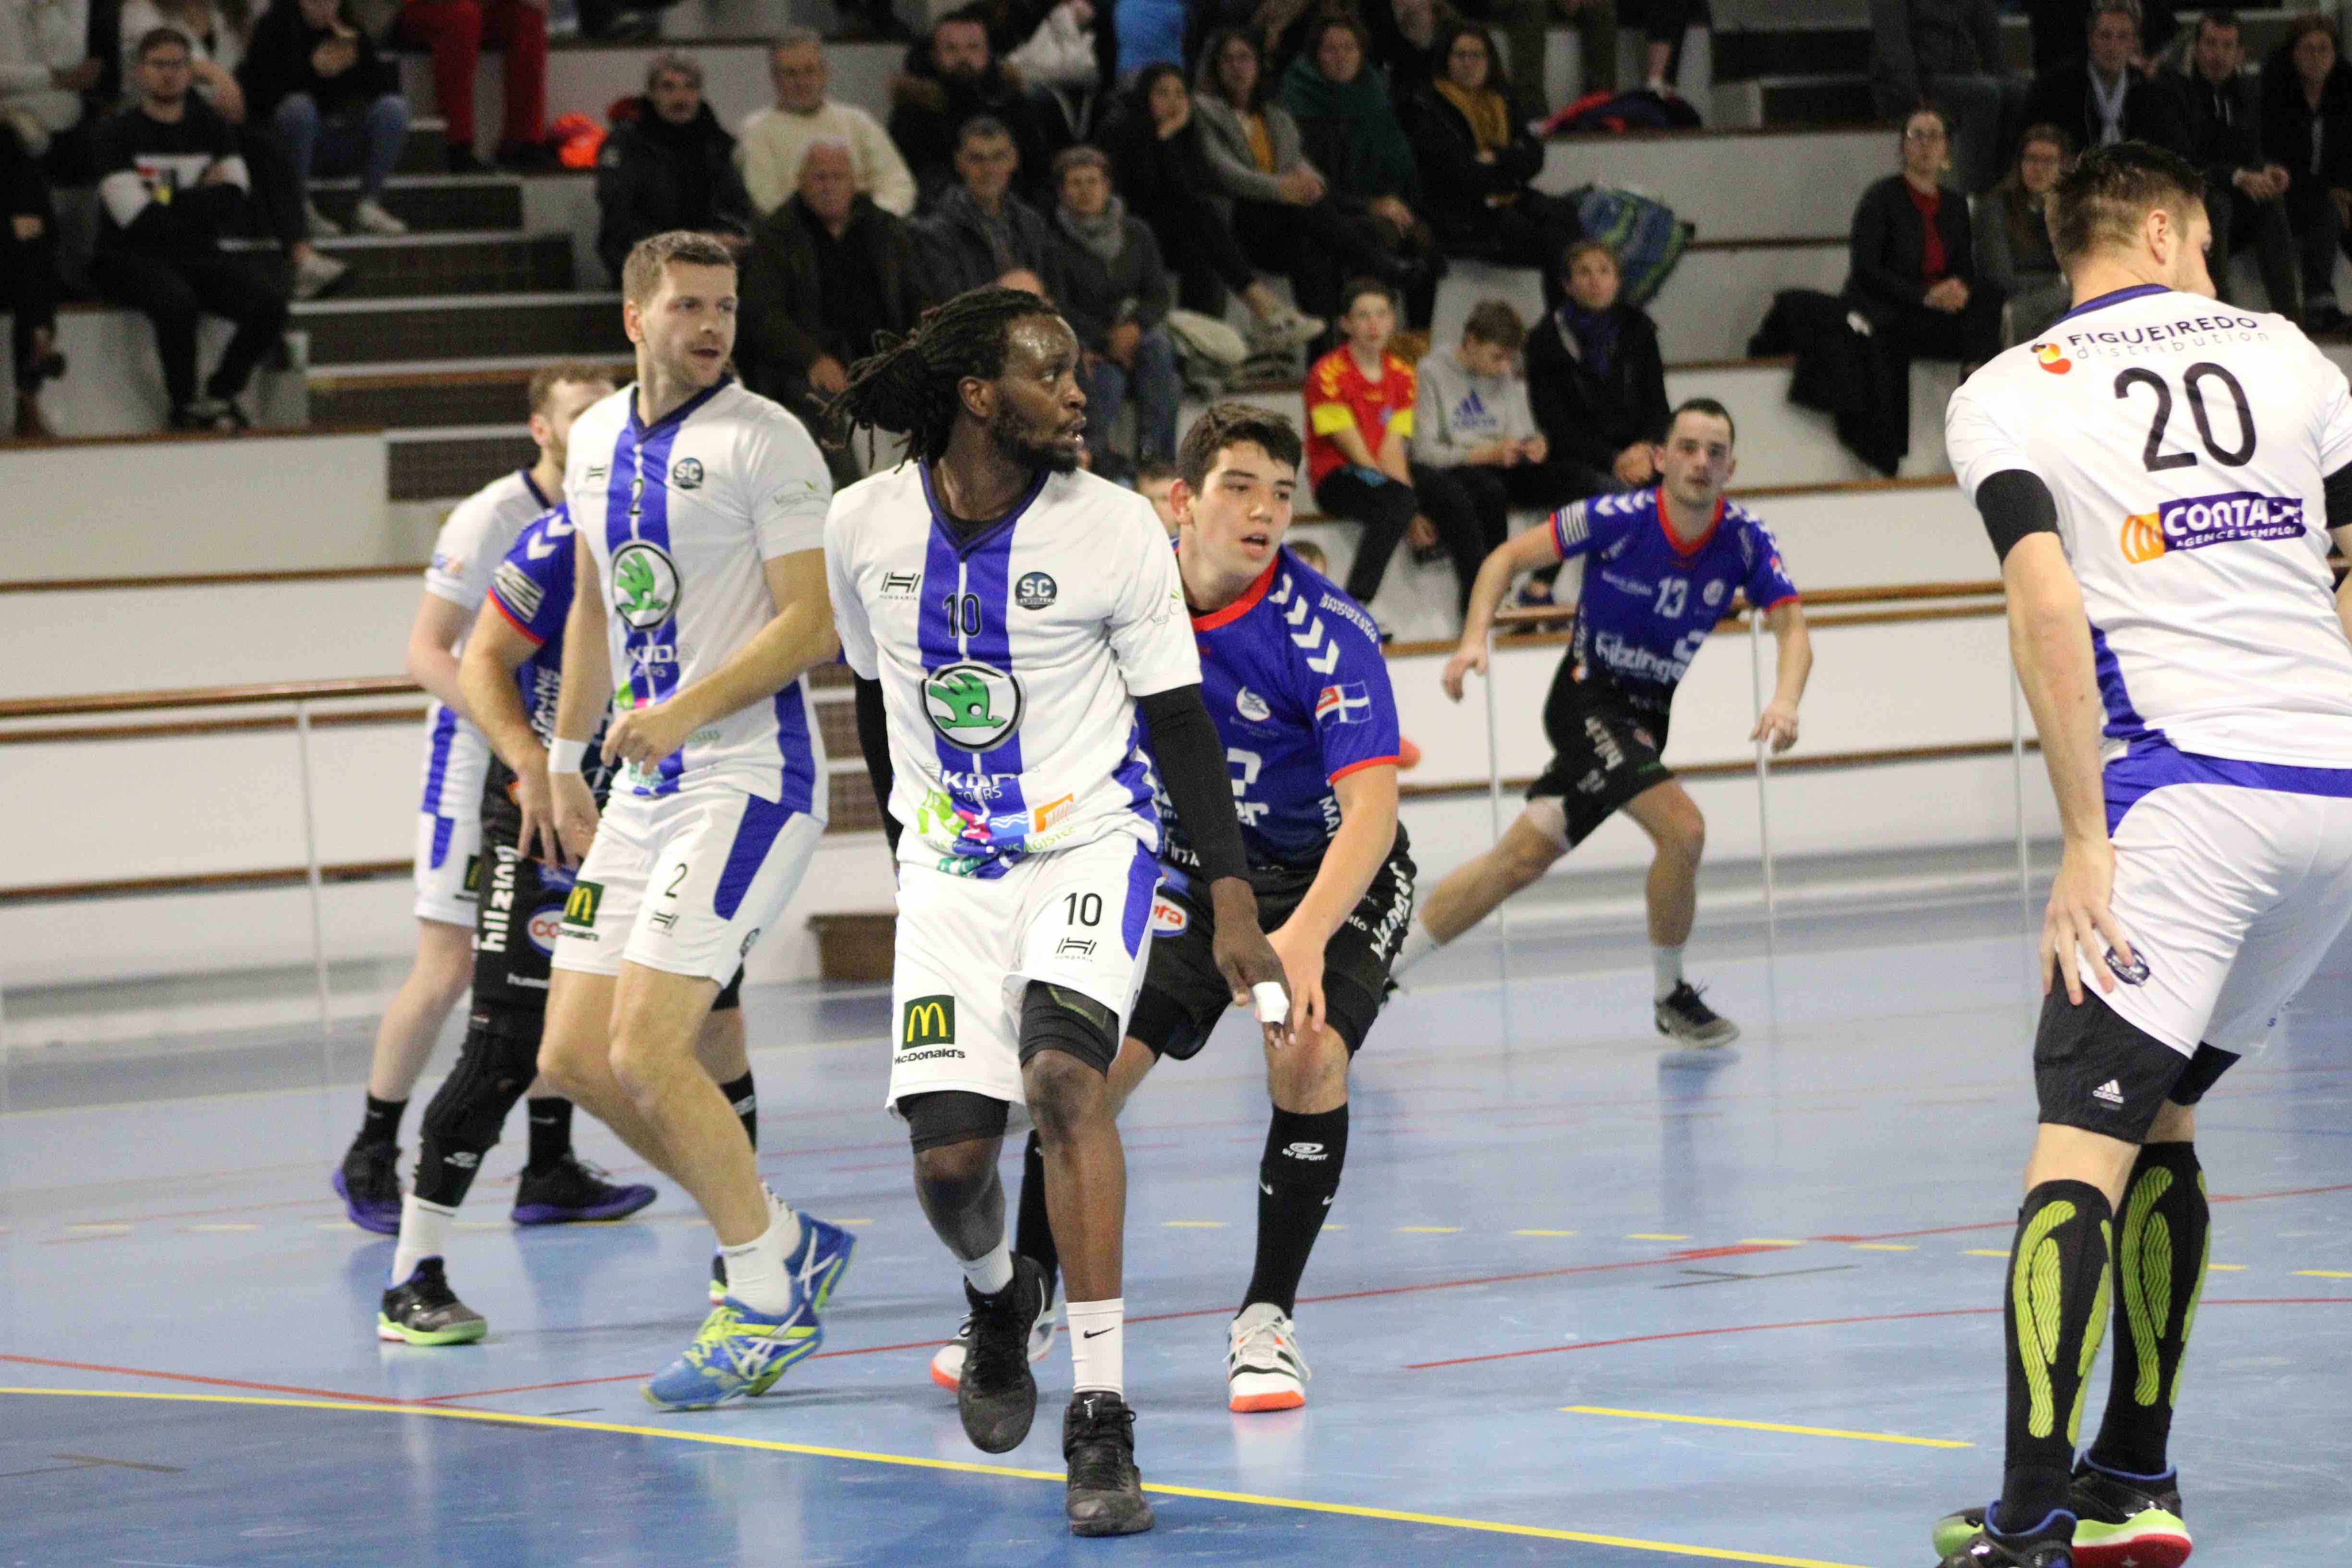 2019nov23 CJF hb _ SC handball (173)